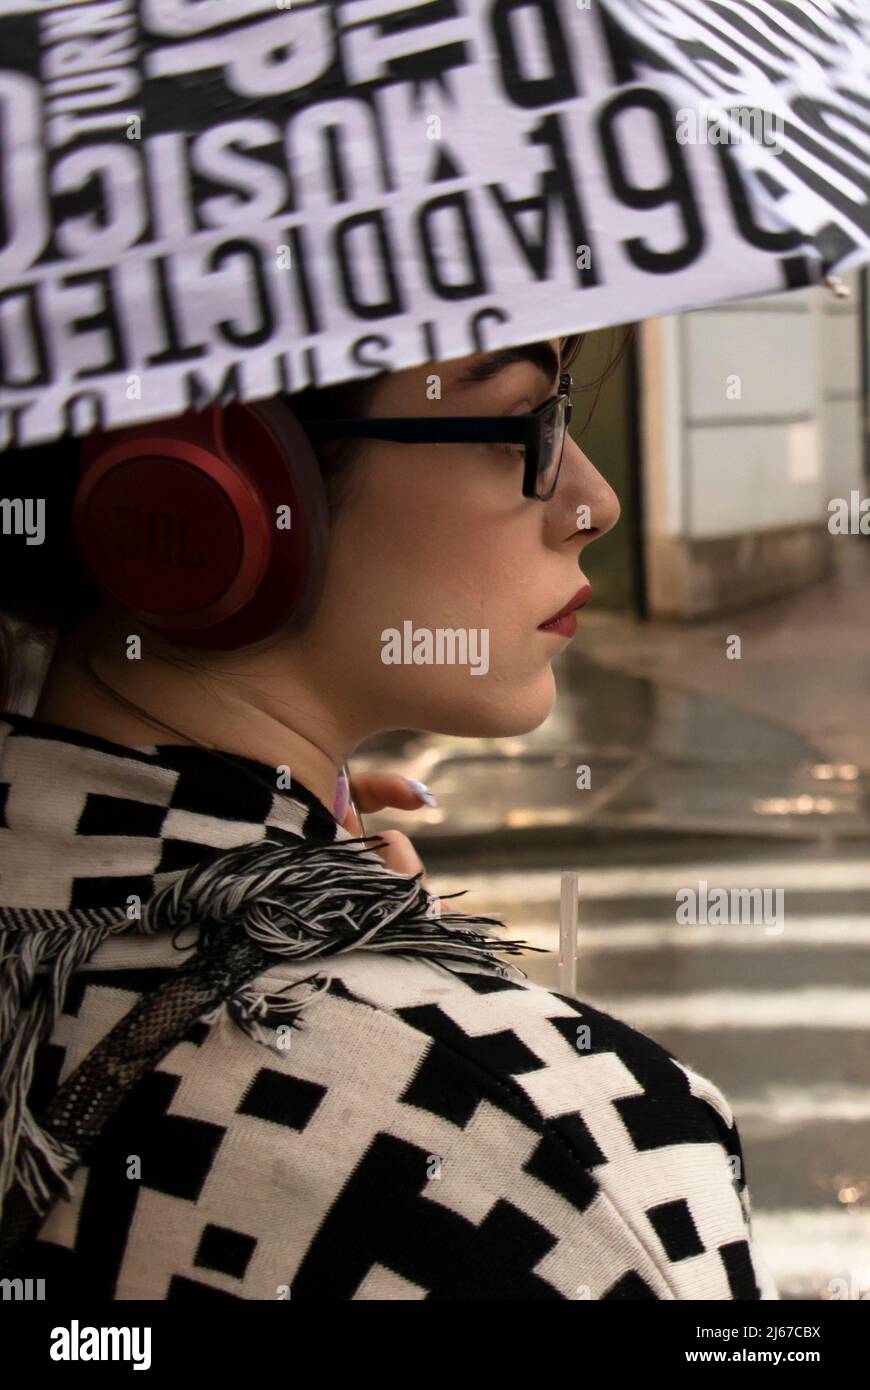 Belgrado, Serbia - 27 de abril de 2022: Mujer joven con un traje negro y blanco con auriculares rojos, lápiz labial rojo y gafas bajo el paraguas Foto de stock